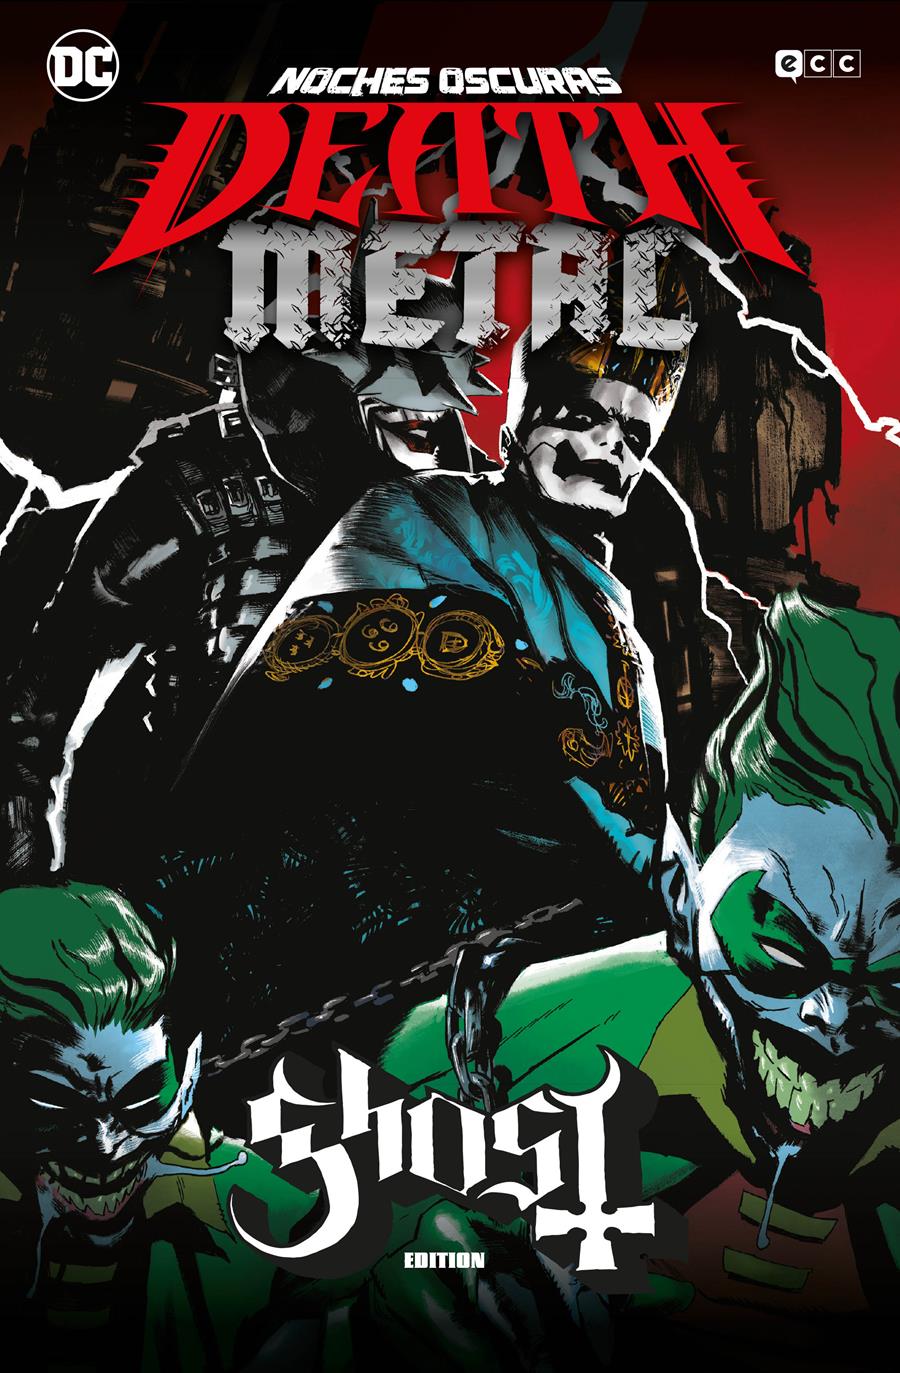 Noches oscuras: Death Metal núm. 02 de 7 (Ghost Band Edition) (Cartoné) | N0421-ECC61 | Scott Snyder, Greg Capullo | Terra de Còmic - Tu tienda de cómics online especializada en cómics, manga y merchandising